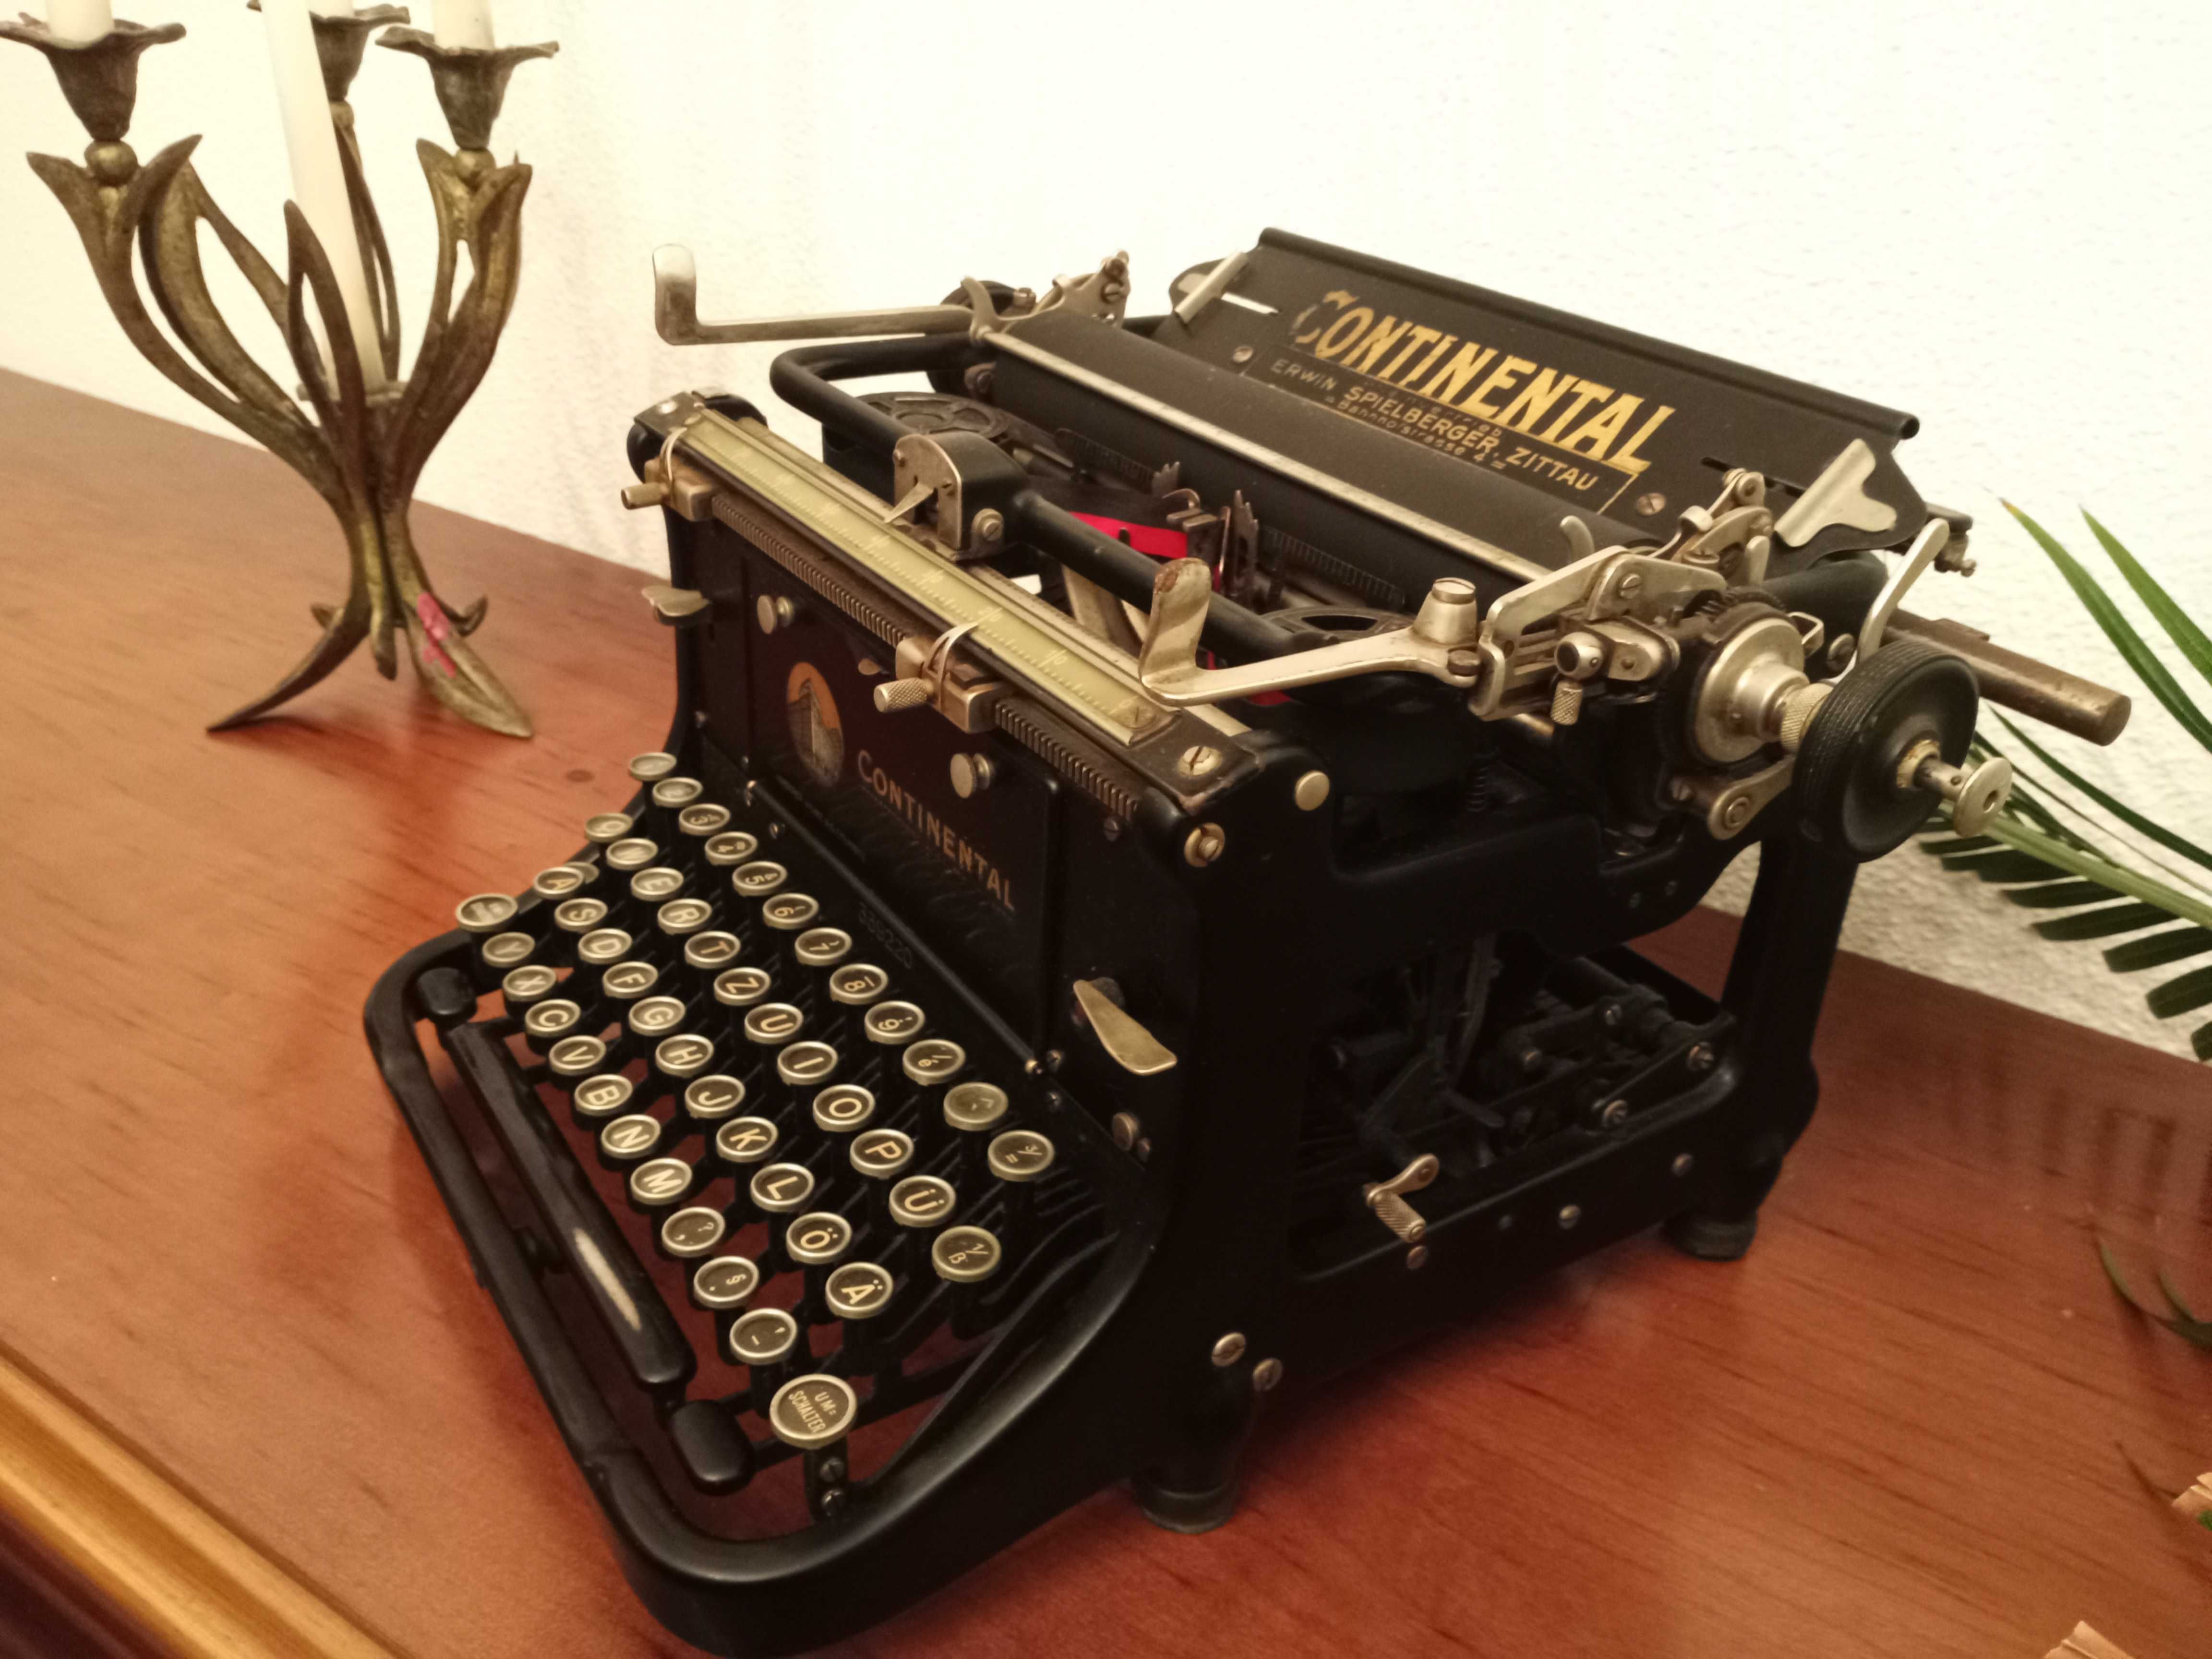 Maquina de escrever Continental antiga